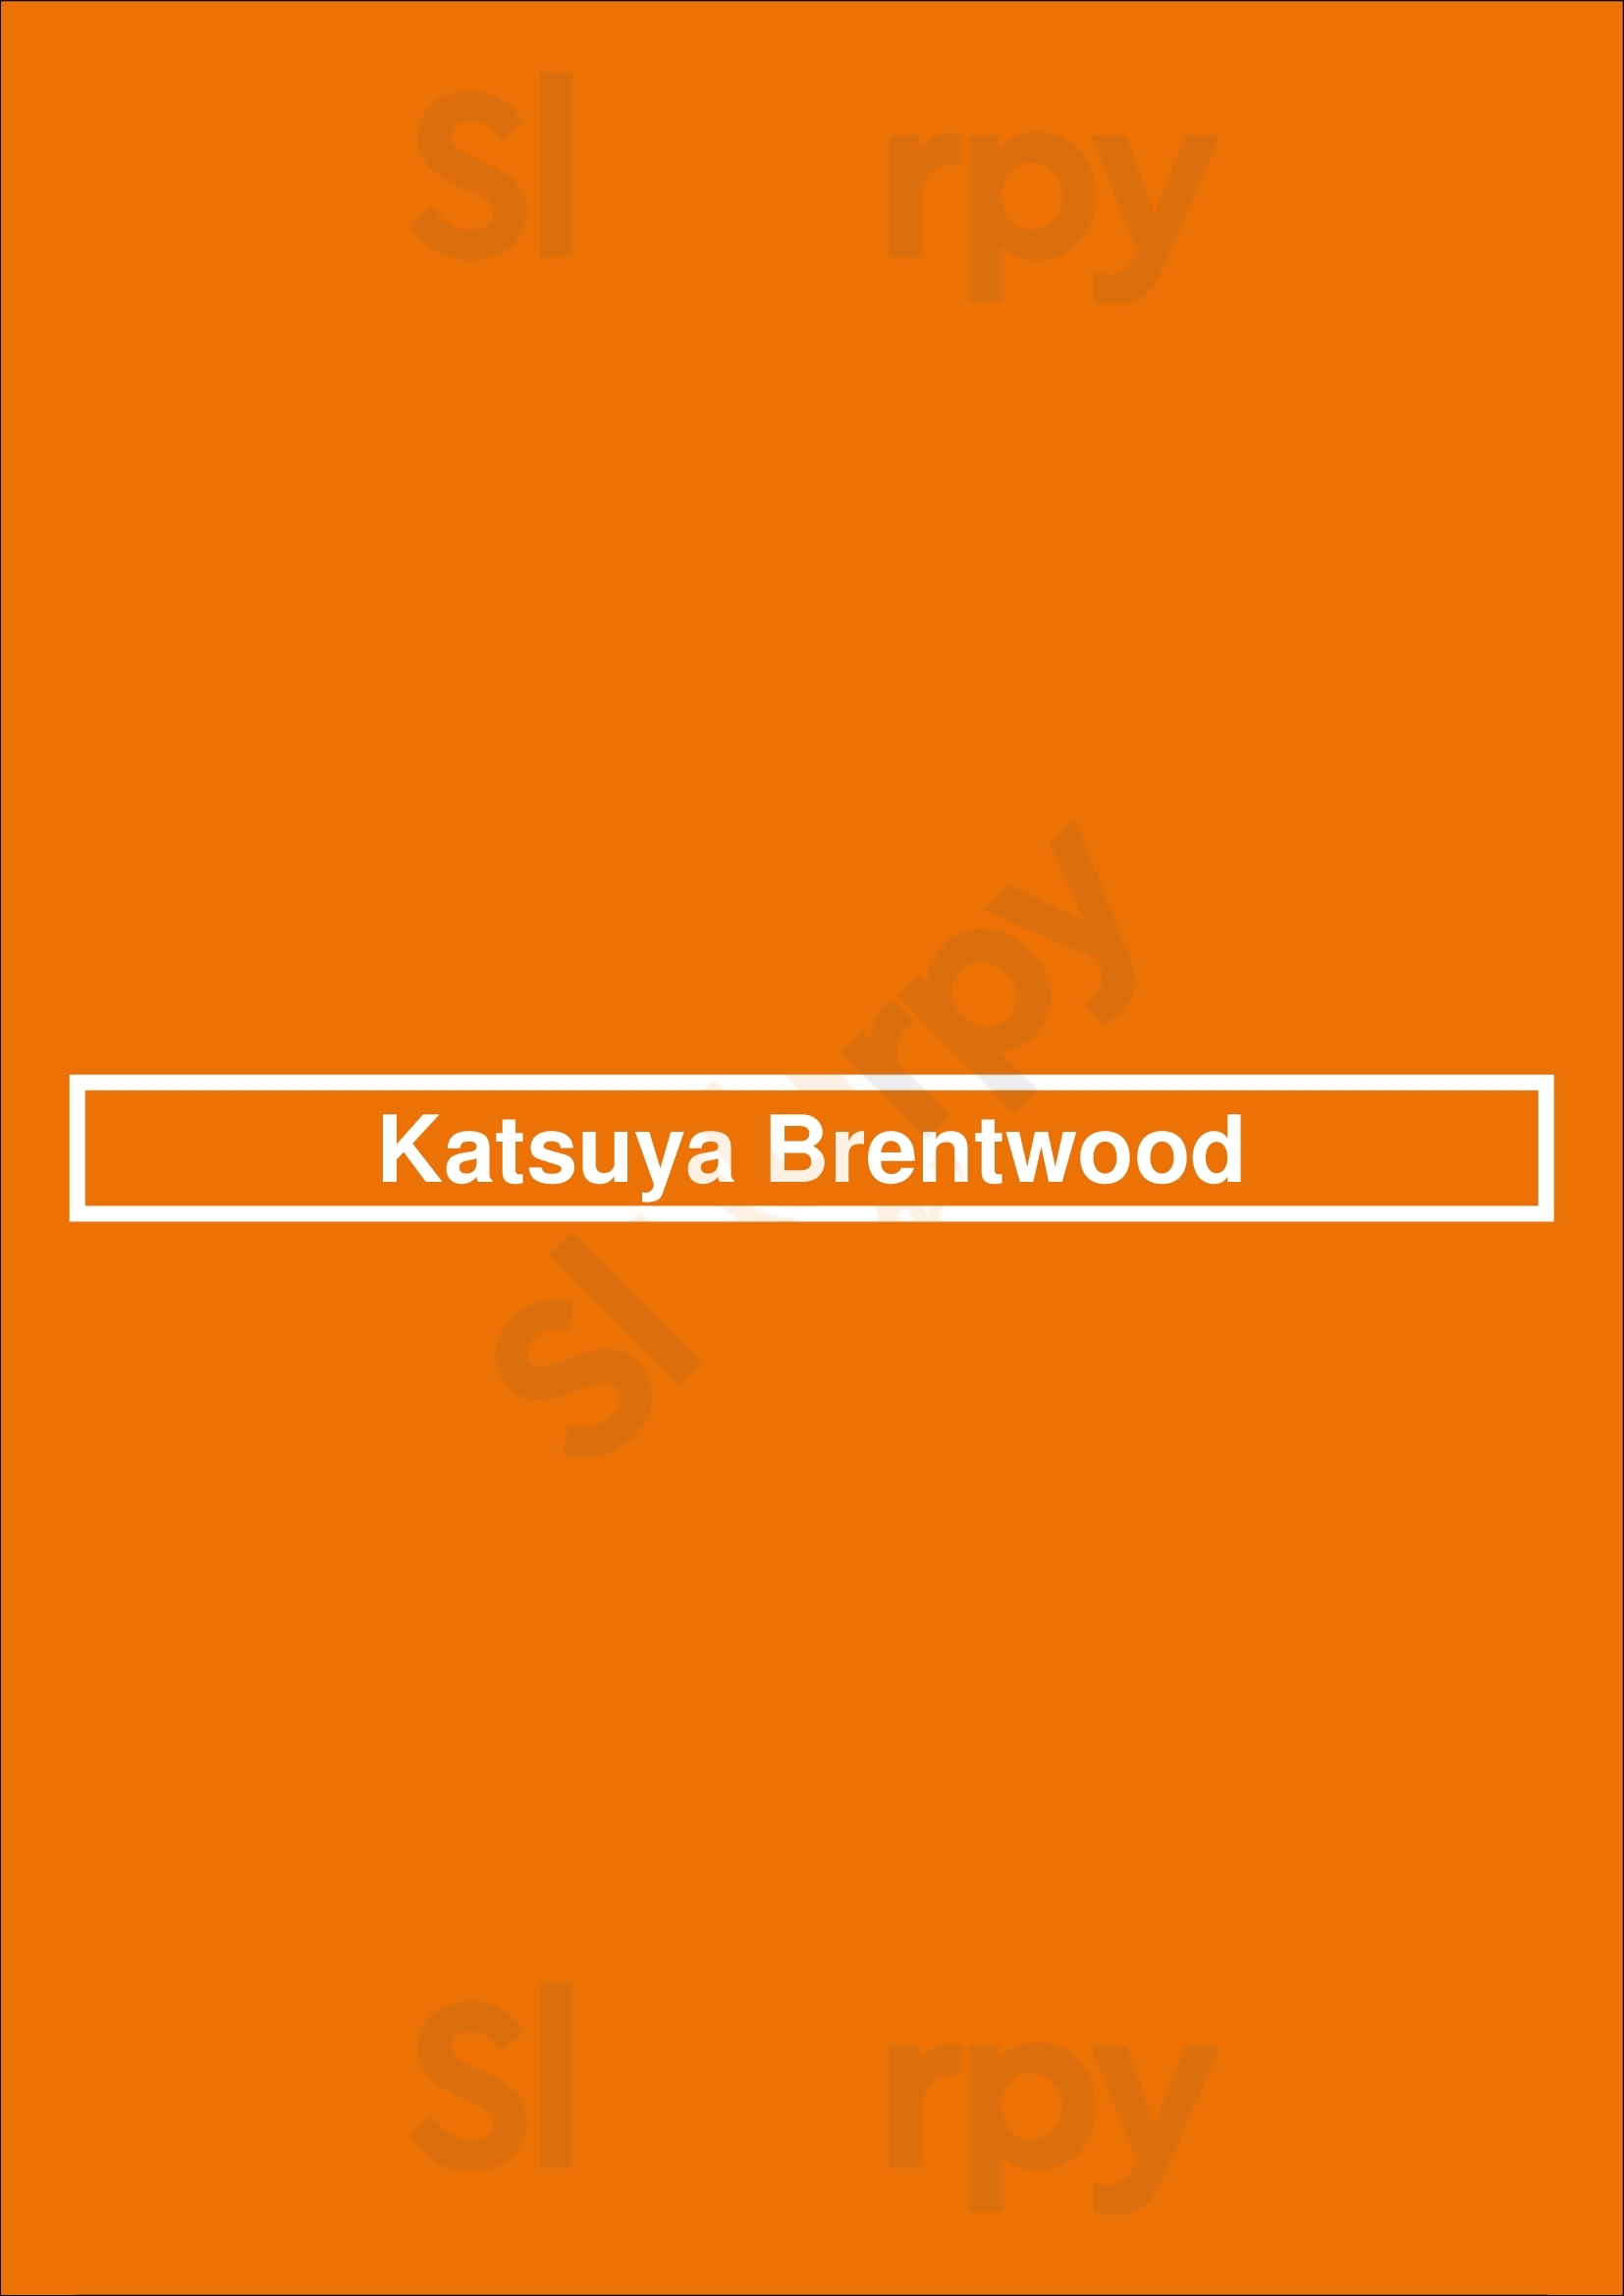 Katsuya Brentwood Los Angeles Menu - 1